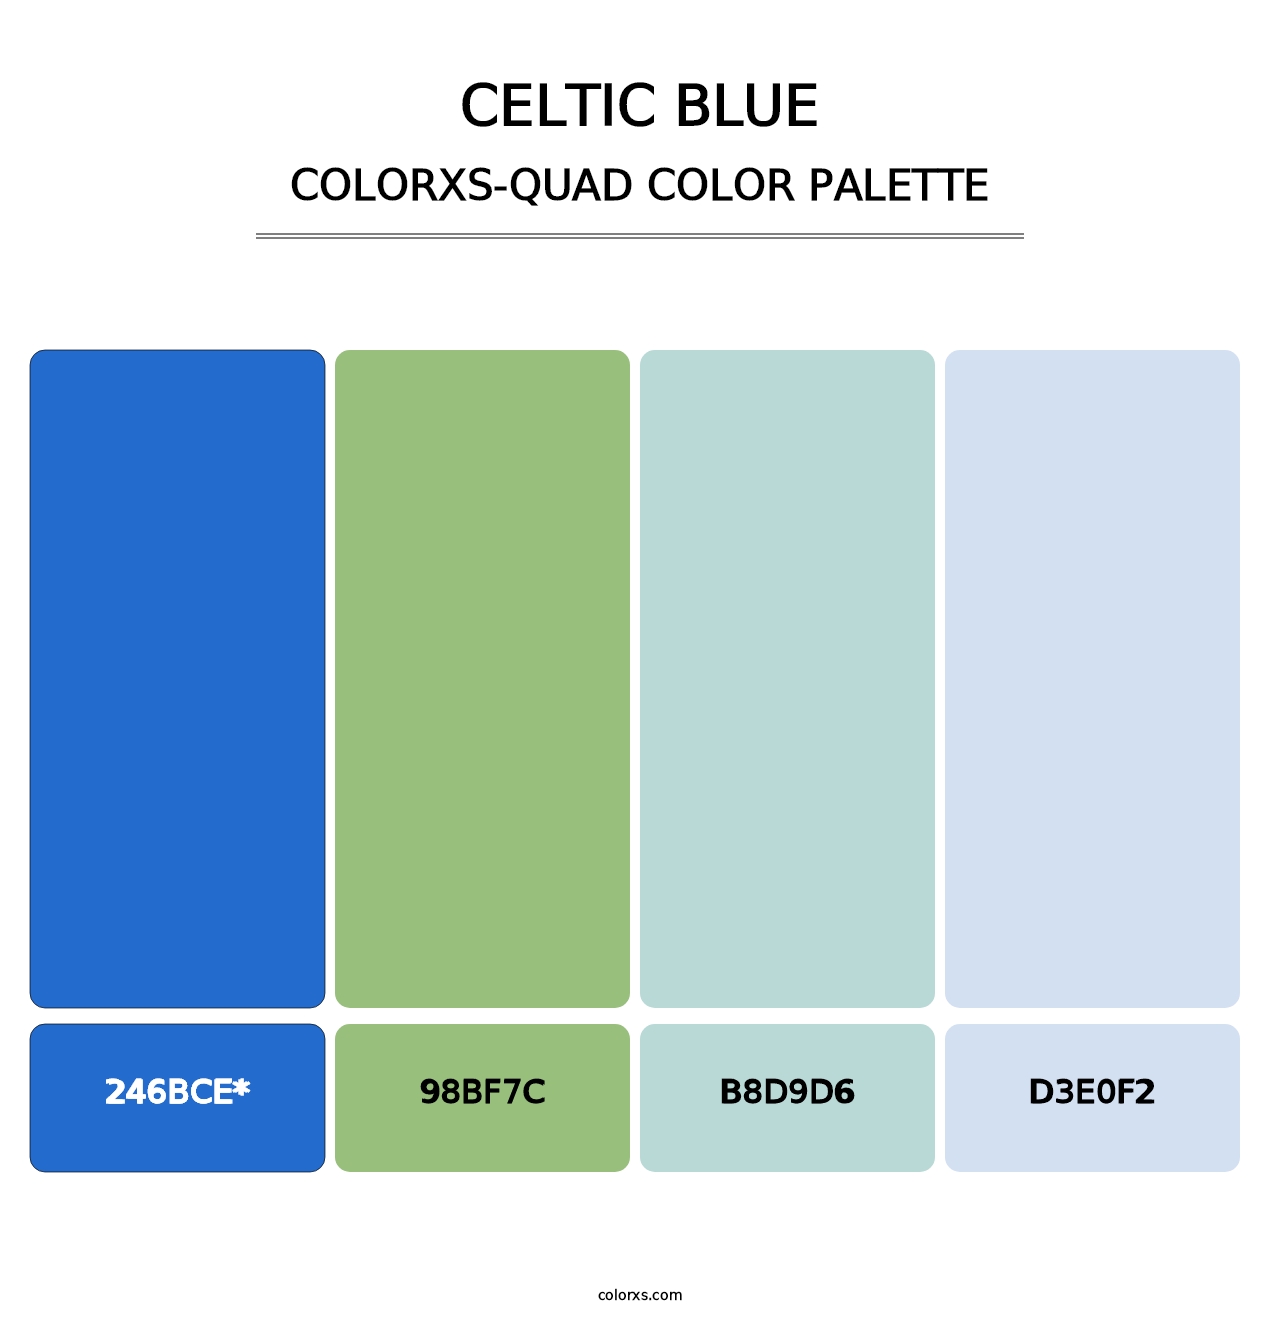 Celtic Blue - Colorxs Quad Palette